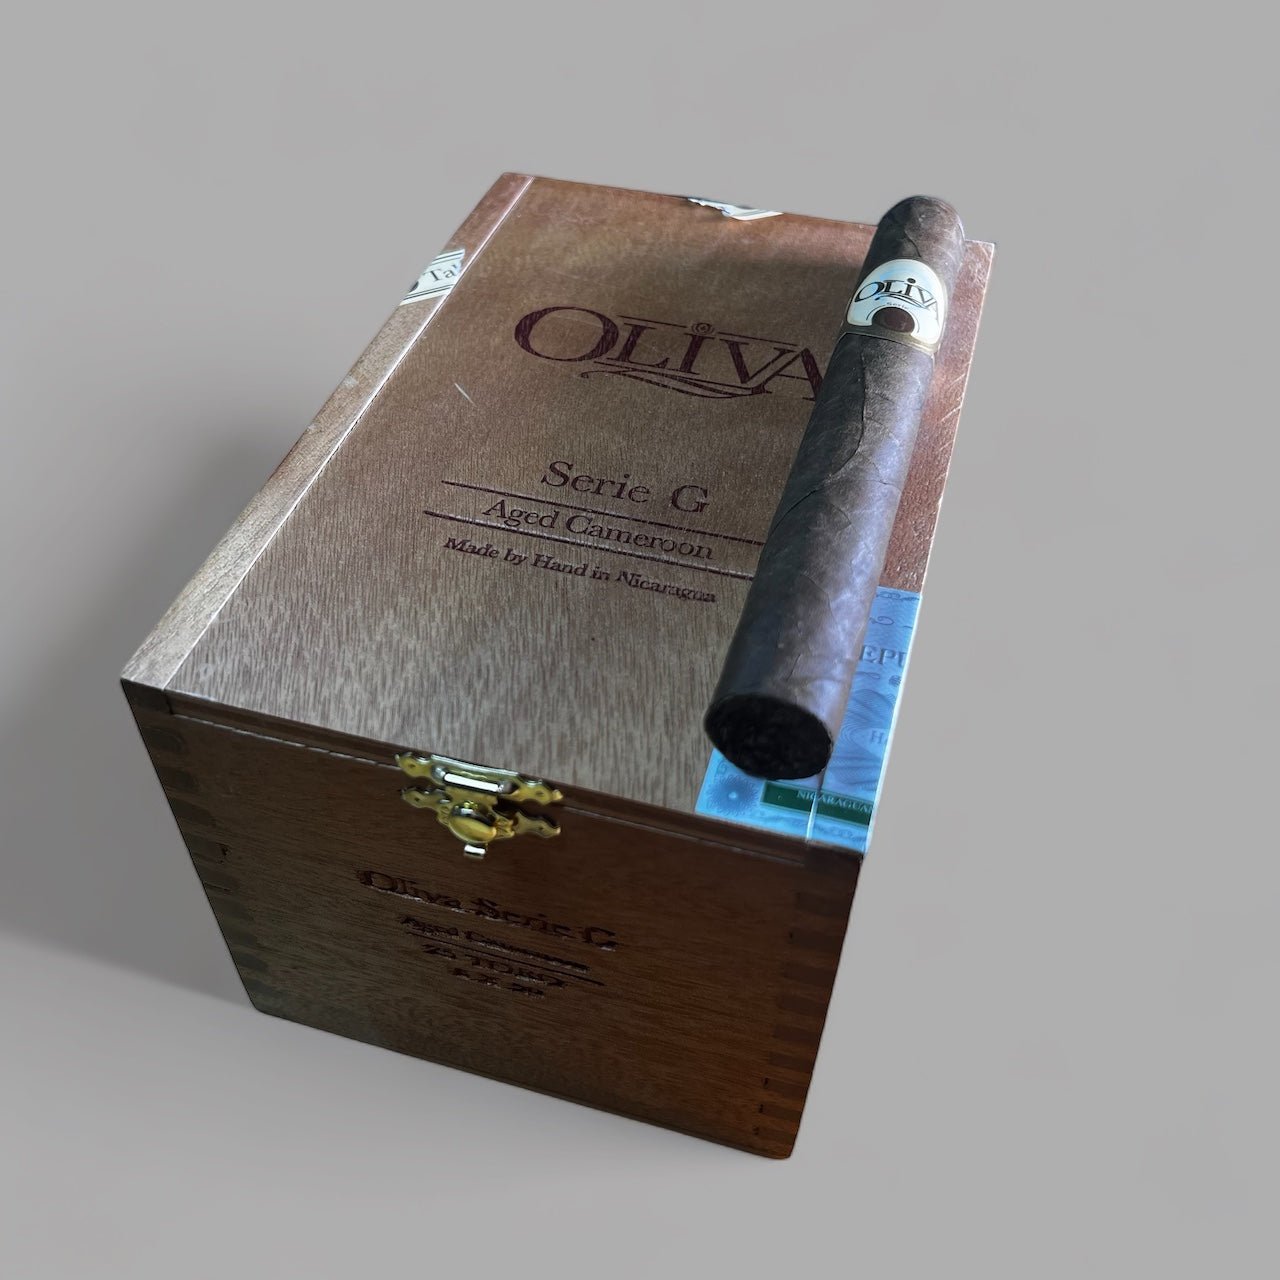 Oliva Serie G Cameroon Toro - Cigar 30